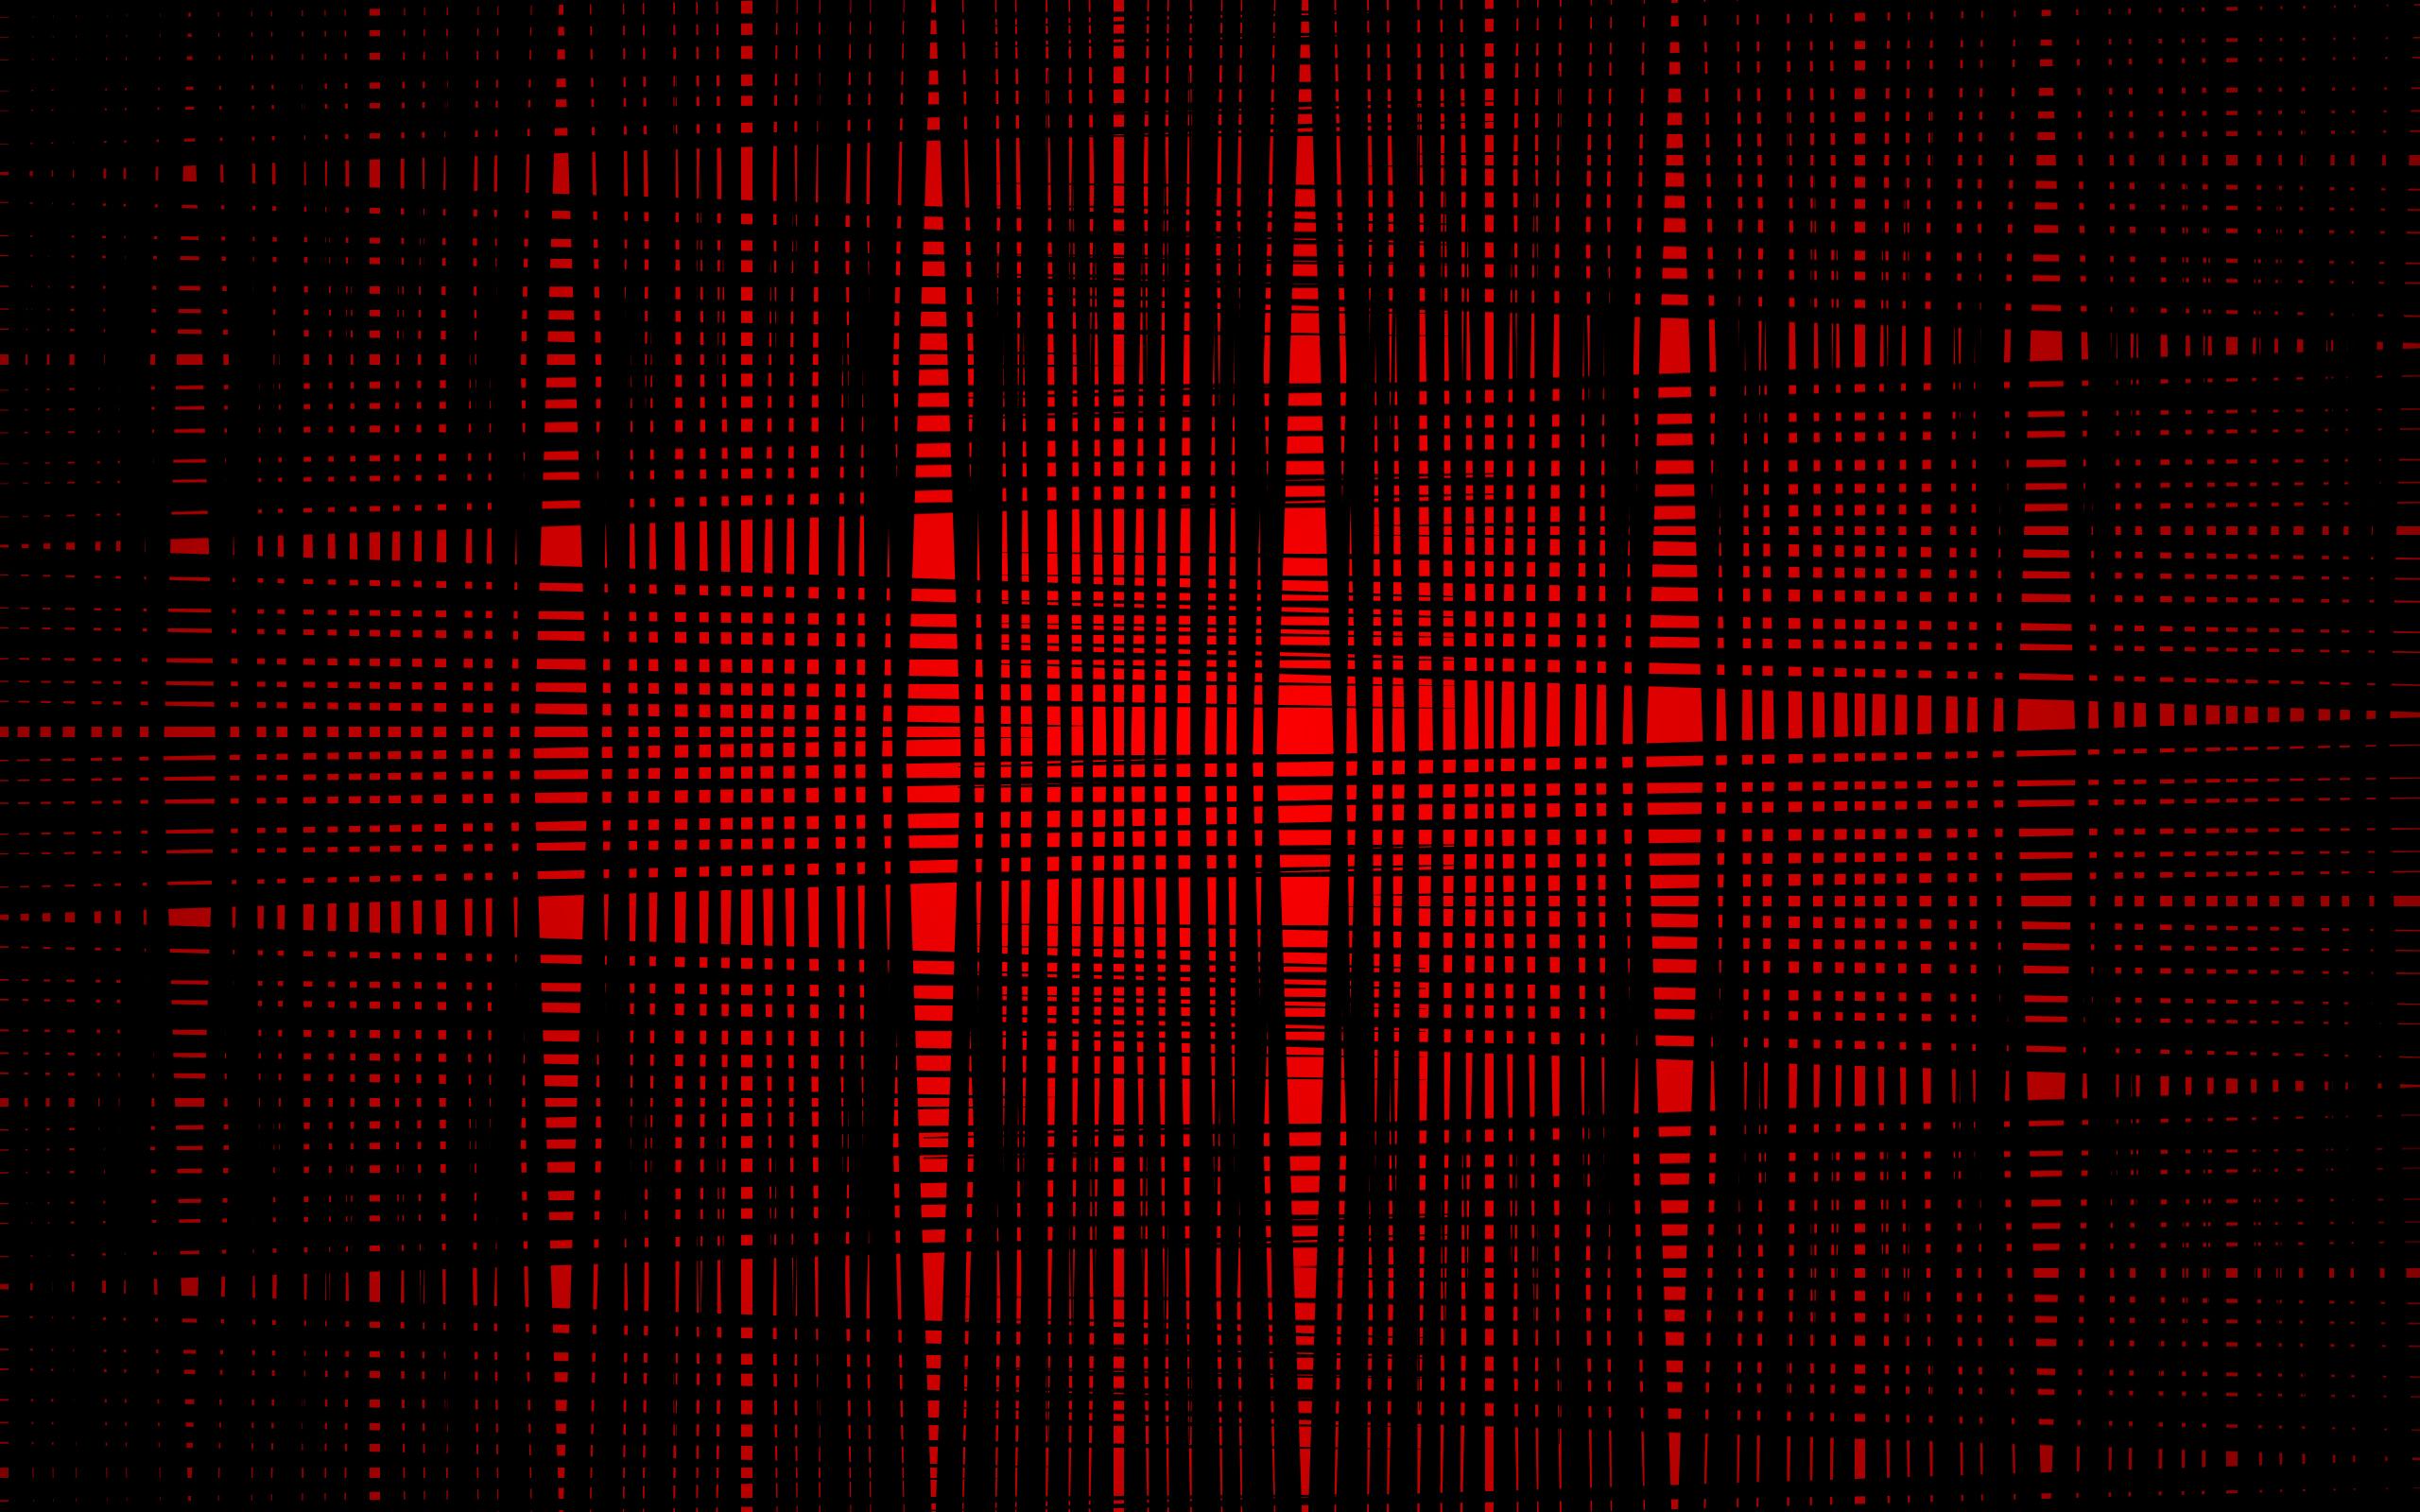 Black and Red Plaid Wallpapers - Top Hình Ảnh Đẹp